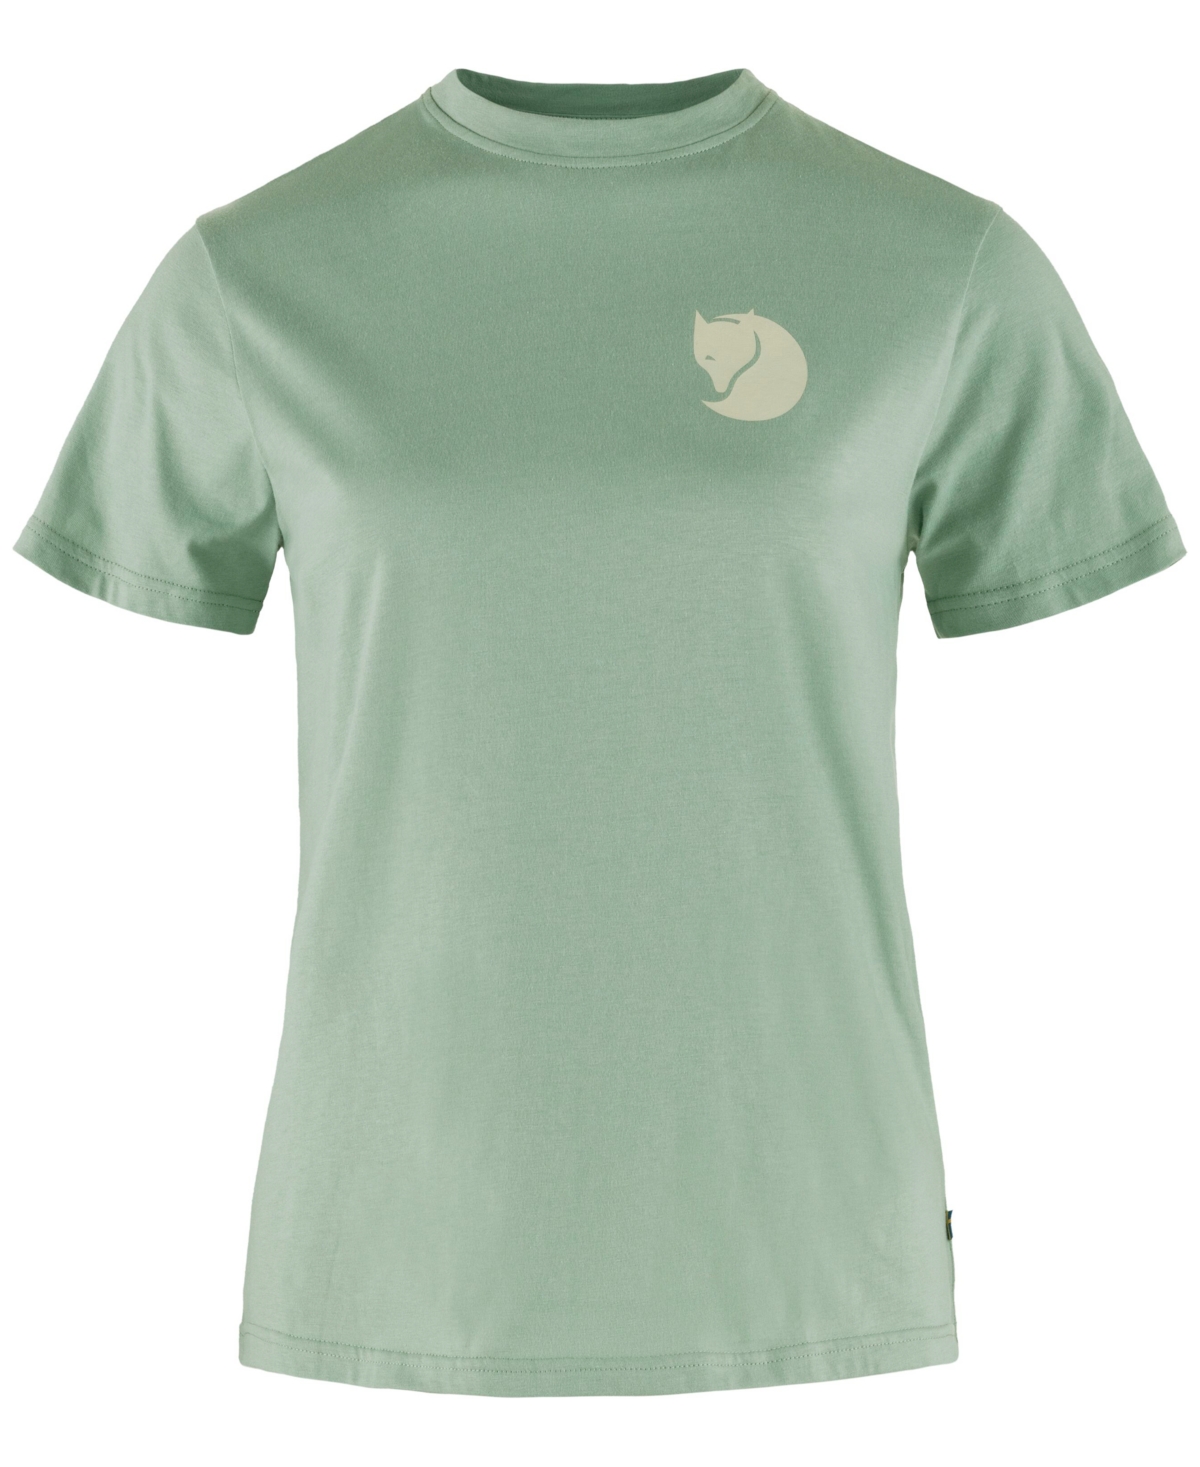 Women's Fox Logo Crewneck Short-Sleeve T-Shirt - MISTY GREEN